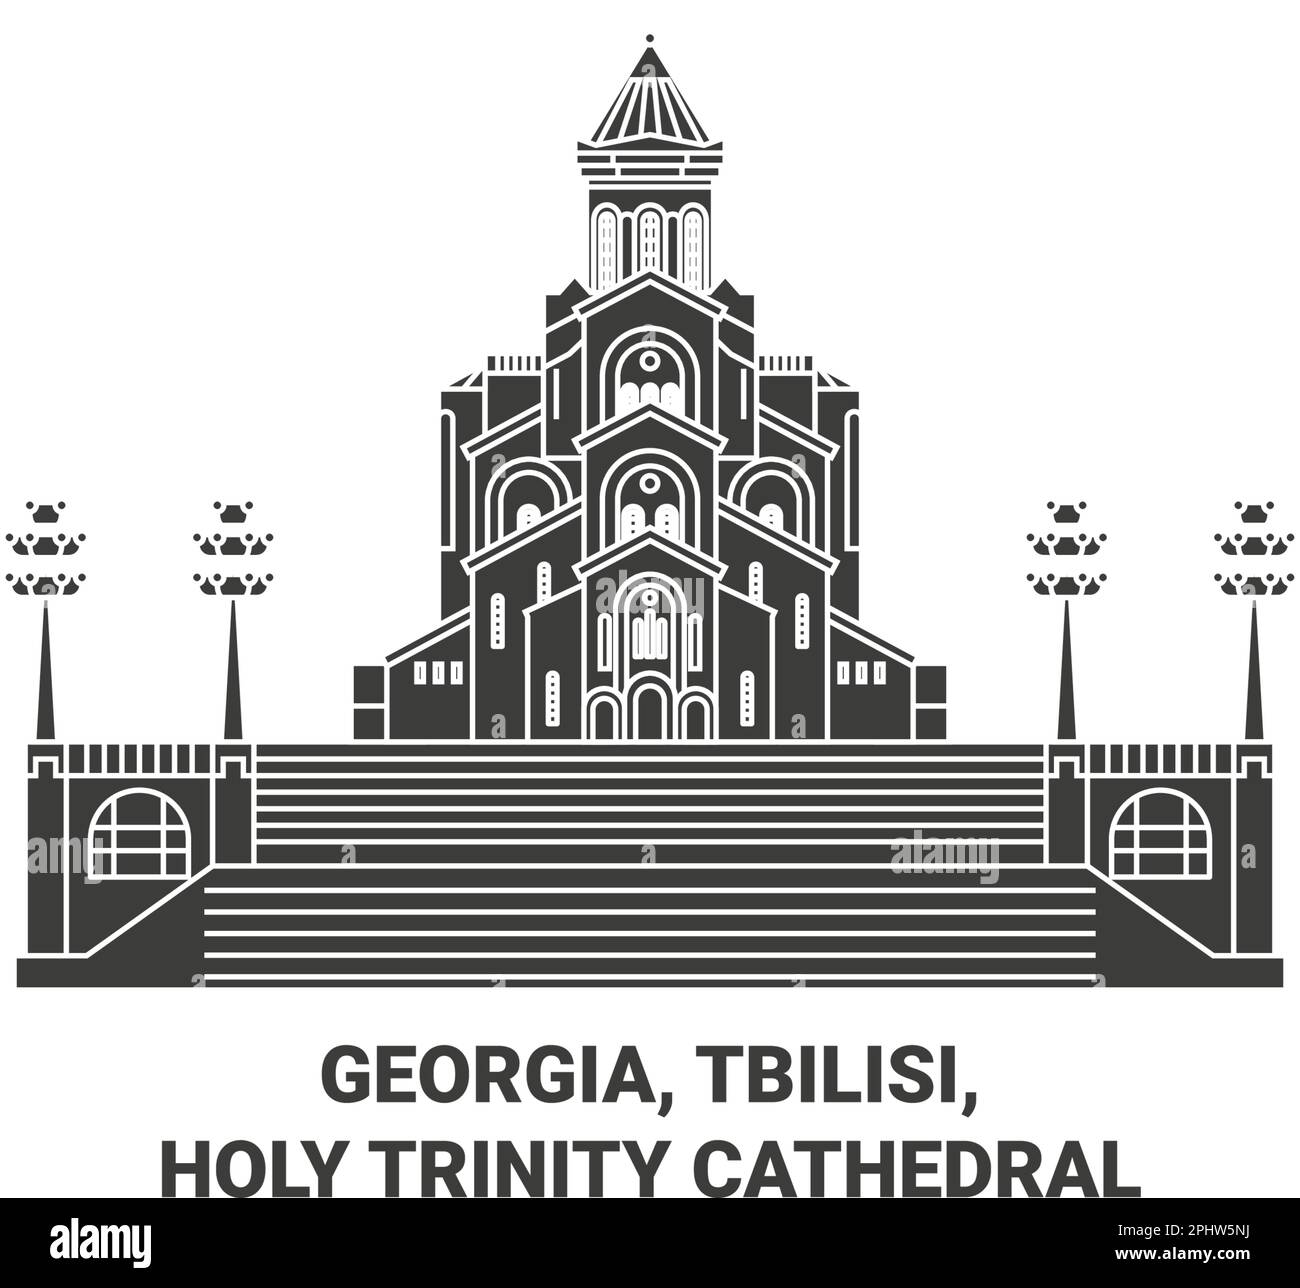 Georgia, Tiflis, Holy Trinity Cathedral reisen als Vektorbild Stock Vektor